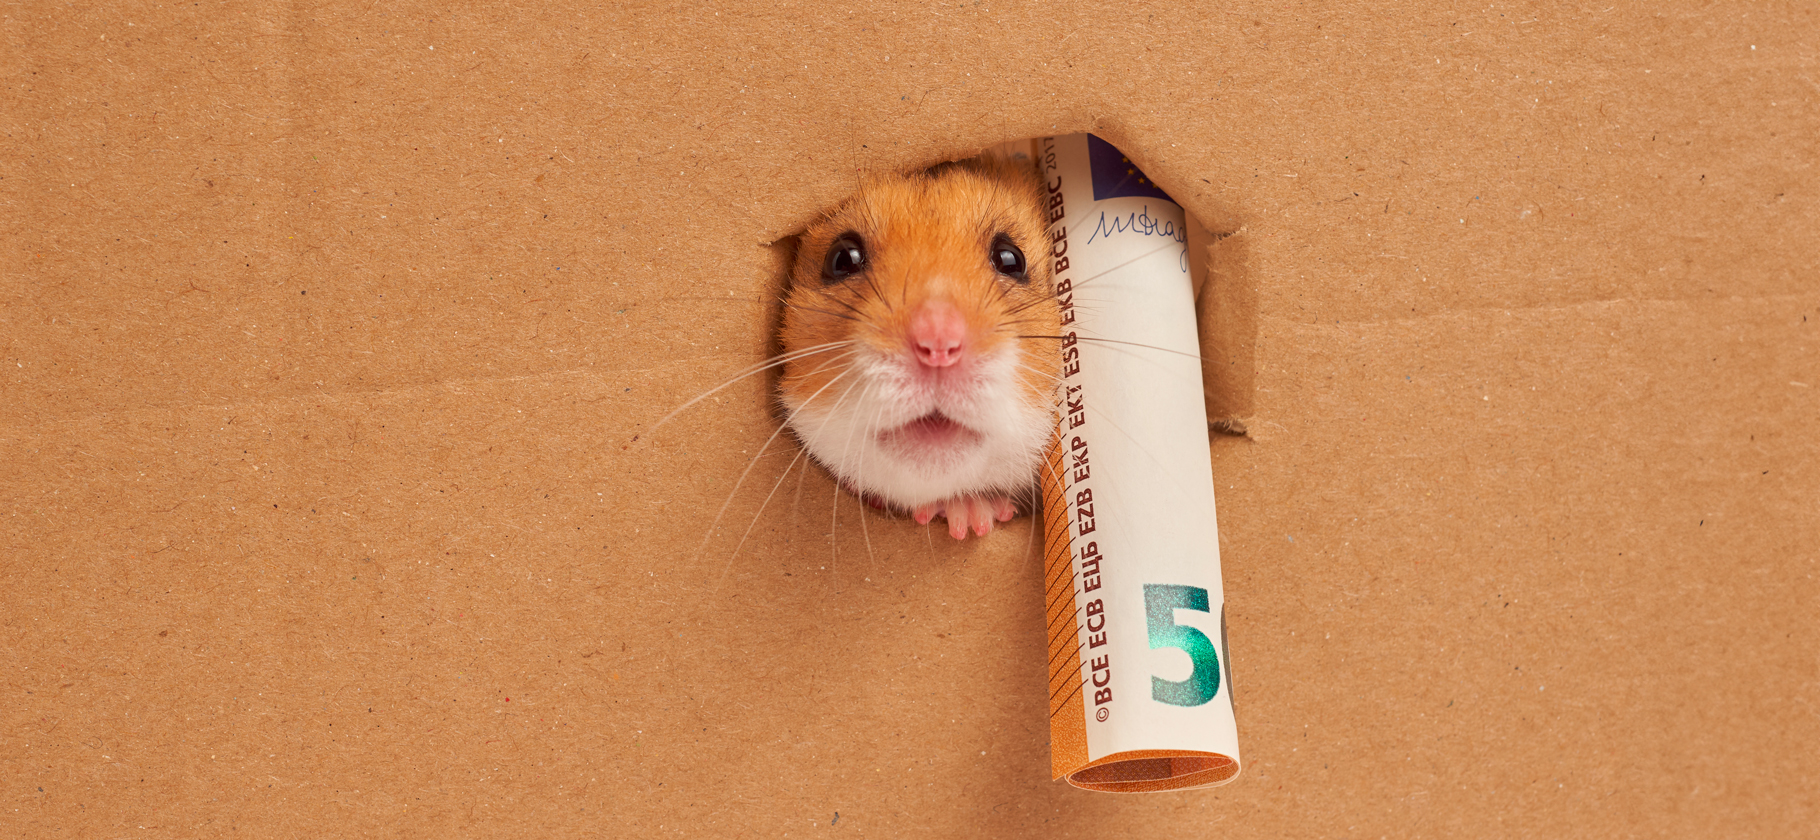 Криптобиржа Bybit запустила премаркет-торговлю токеном Hamster Kombat: что это значит